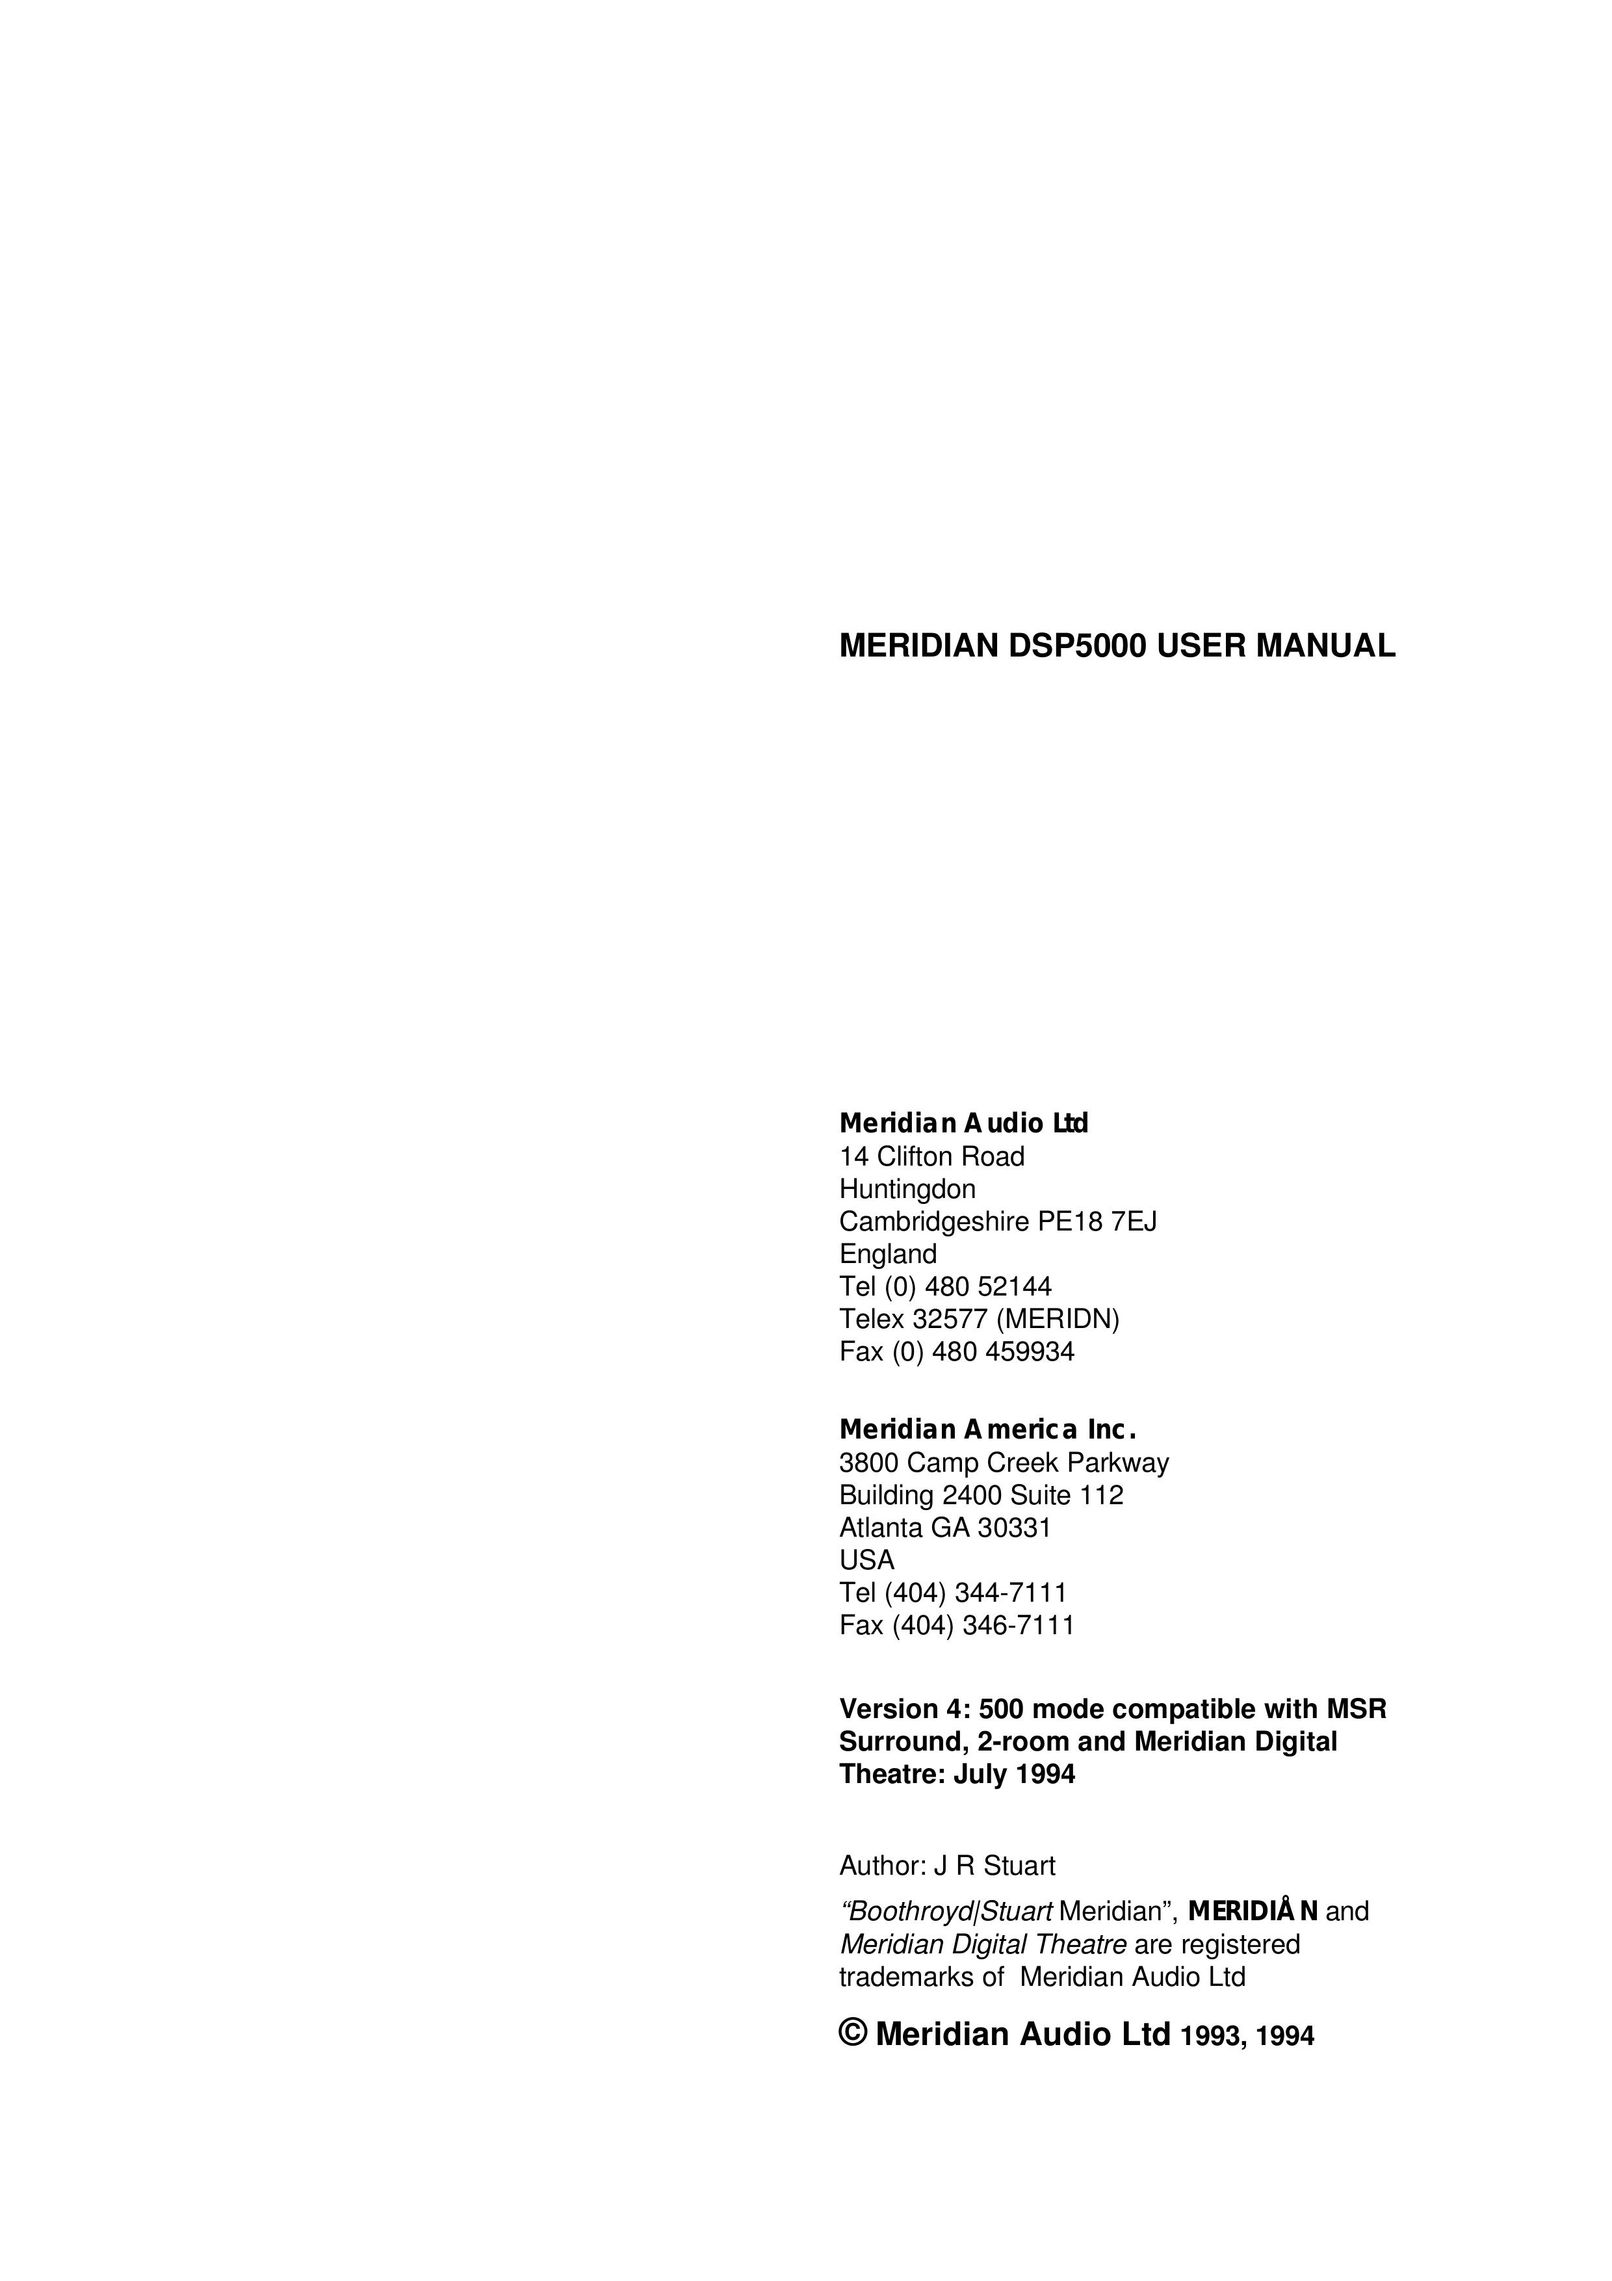 Meridian America DSP5000 Portable Speaker User Manual